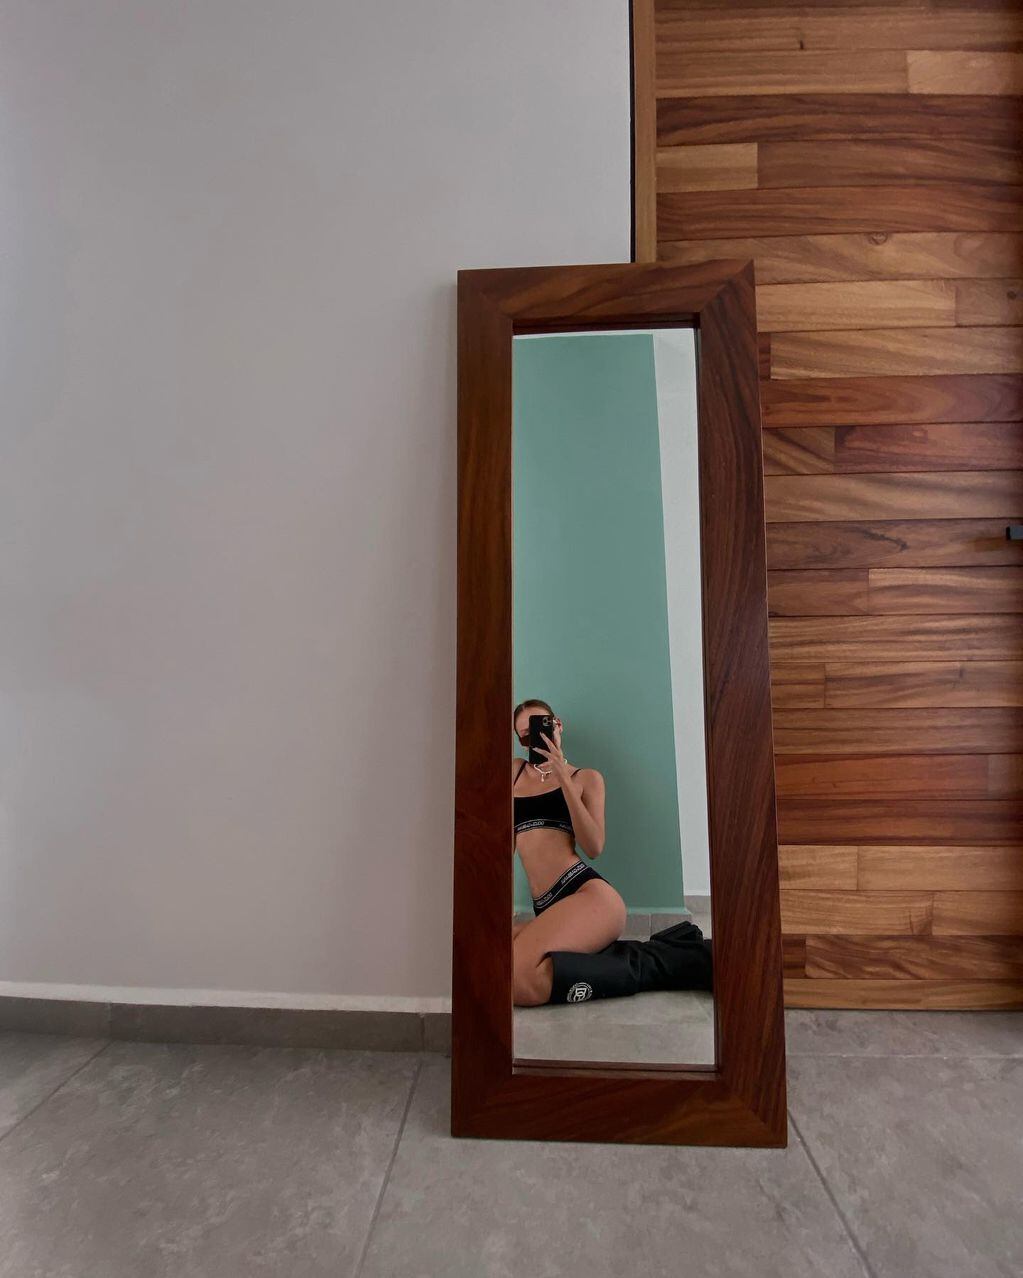 Ester Expósito enamoró a todos en Instagram con una foto frente al espejo